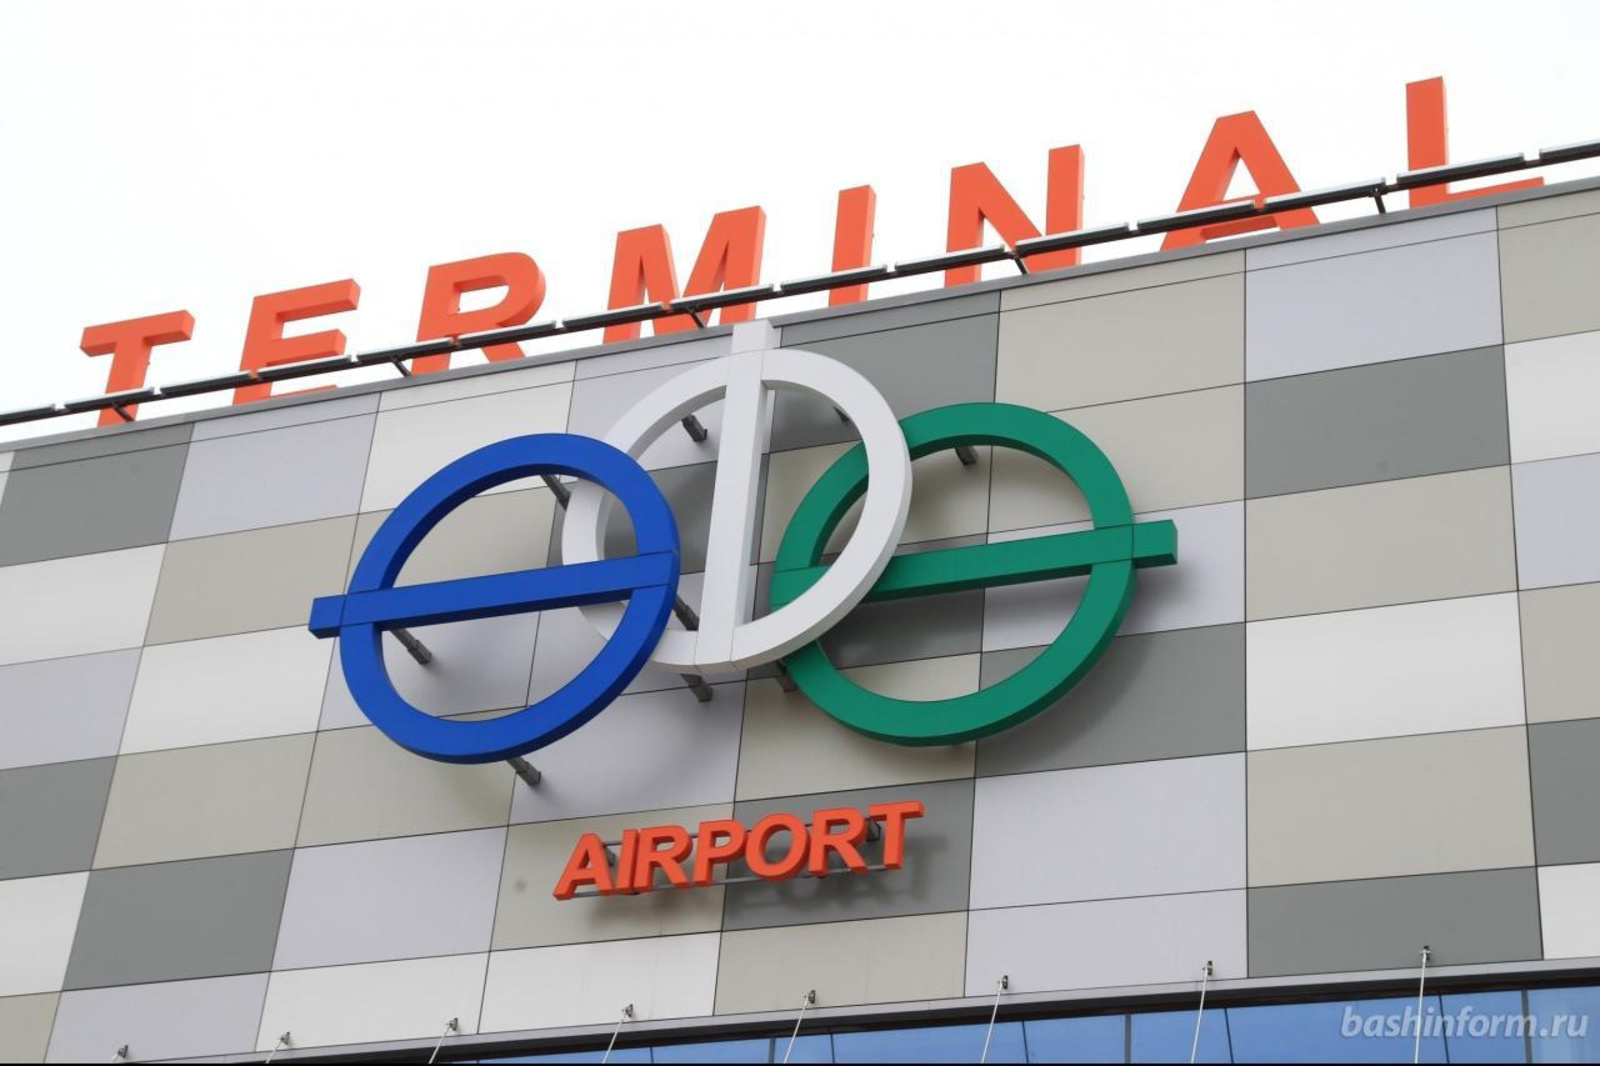 Башкирия: терминалы аэропорта «Уфа» решено объединить